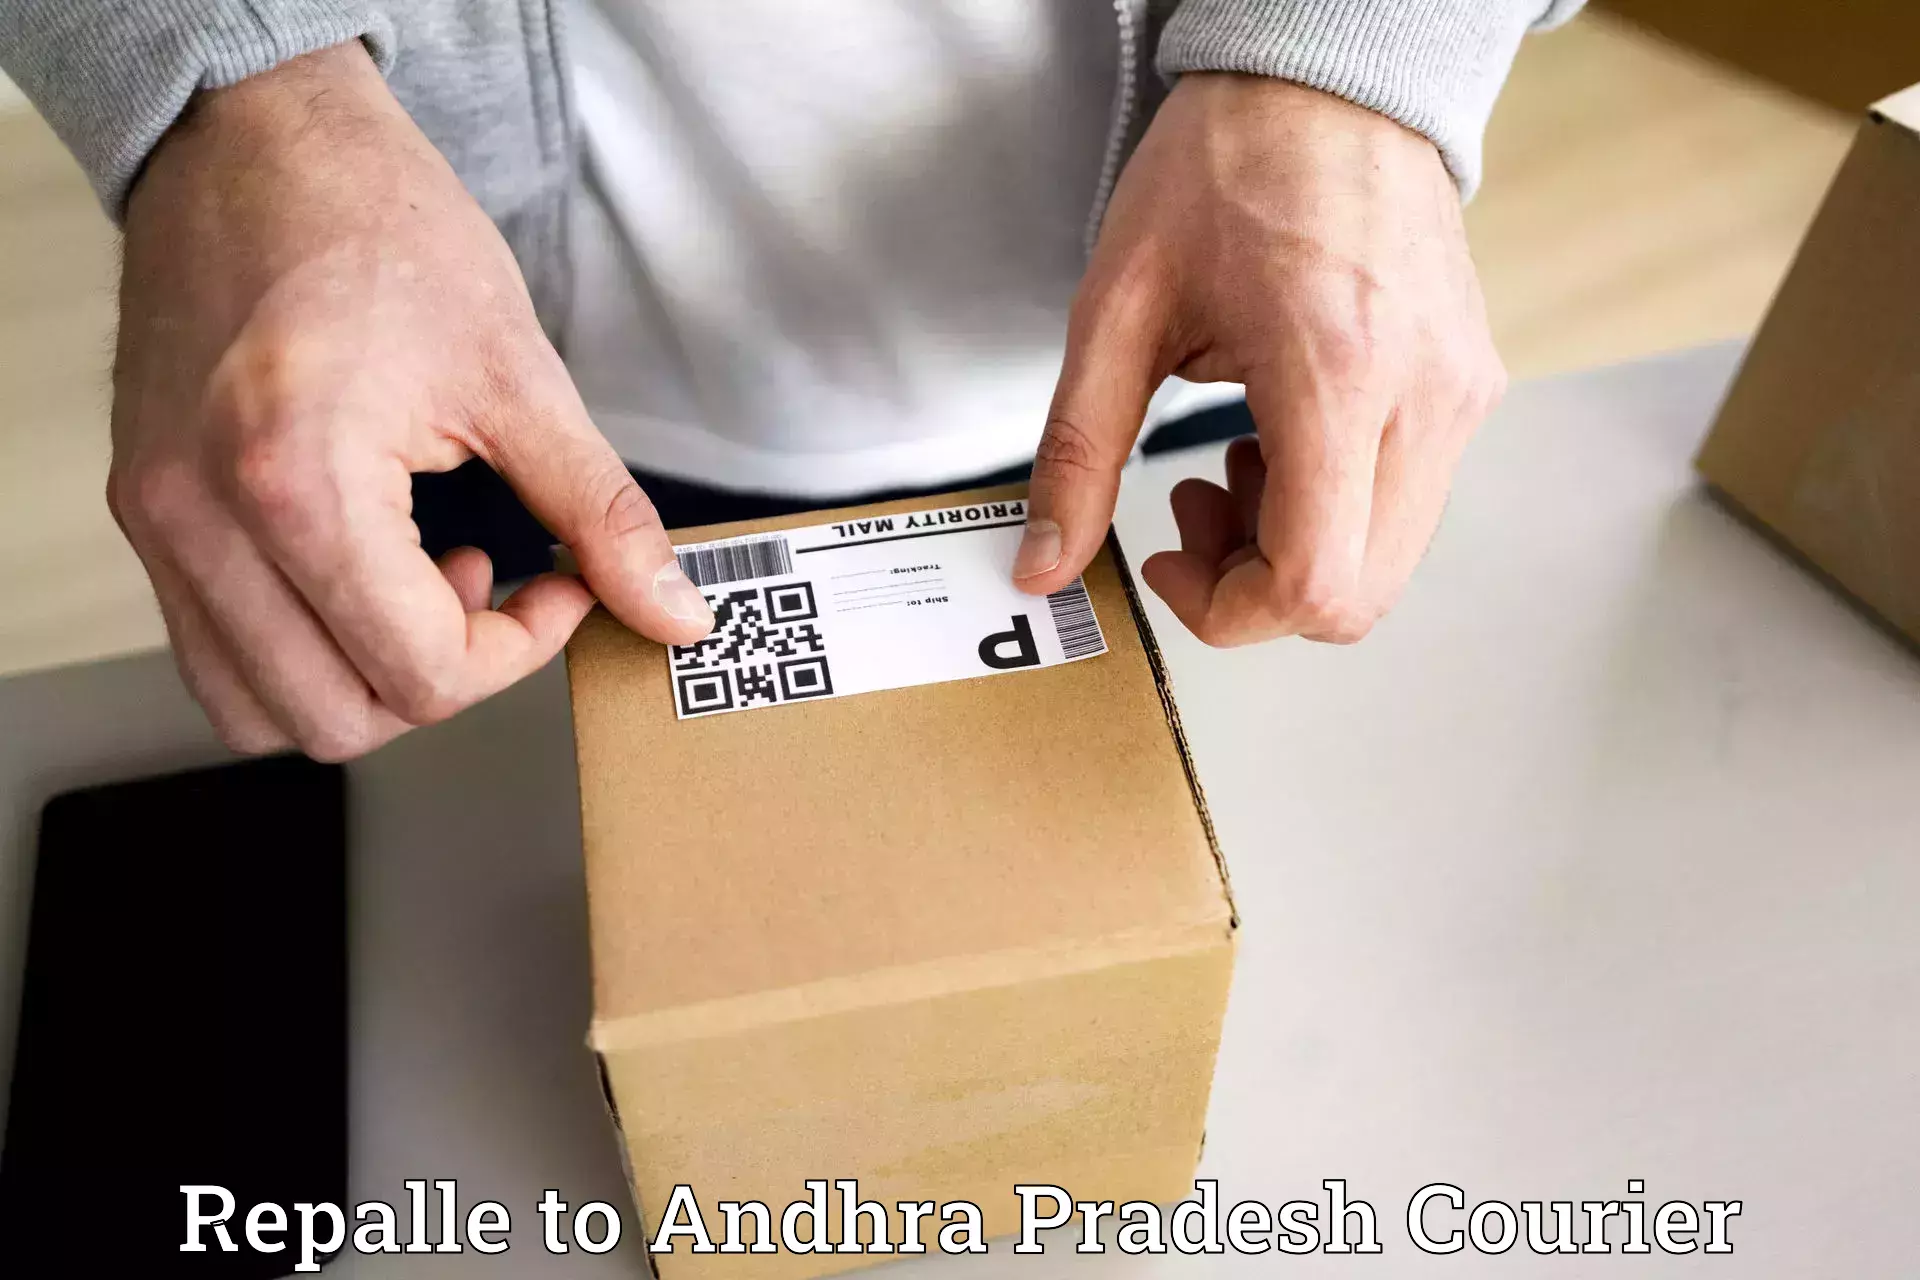 Premium delivery services in Repalle to Tirupati